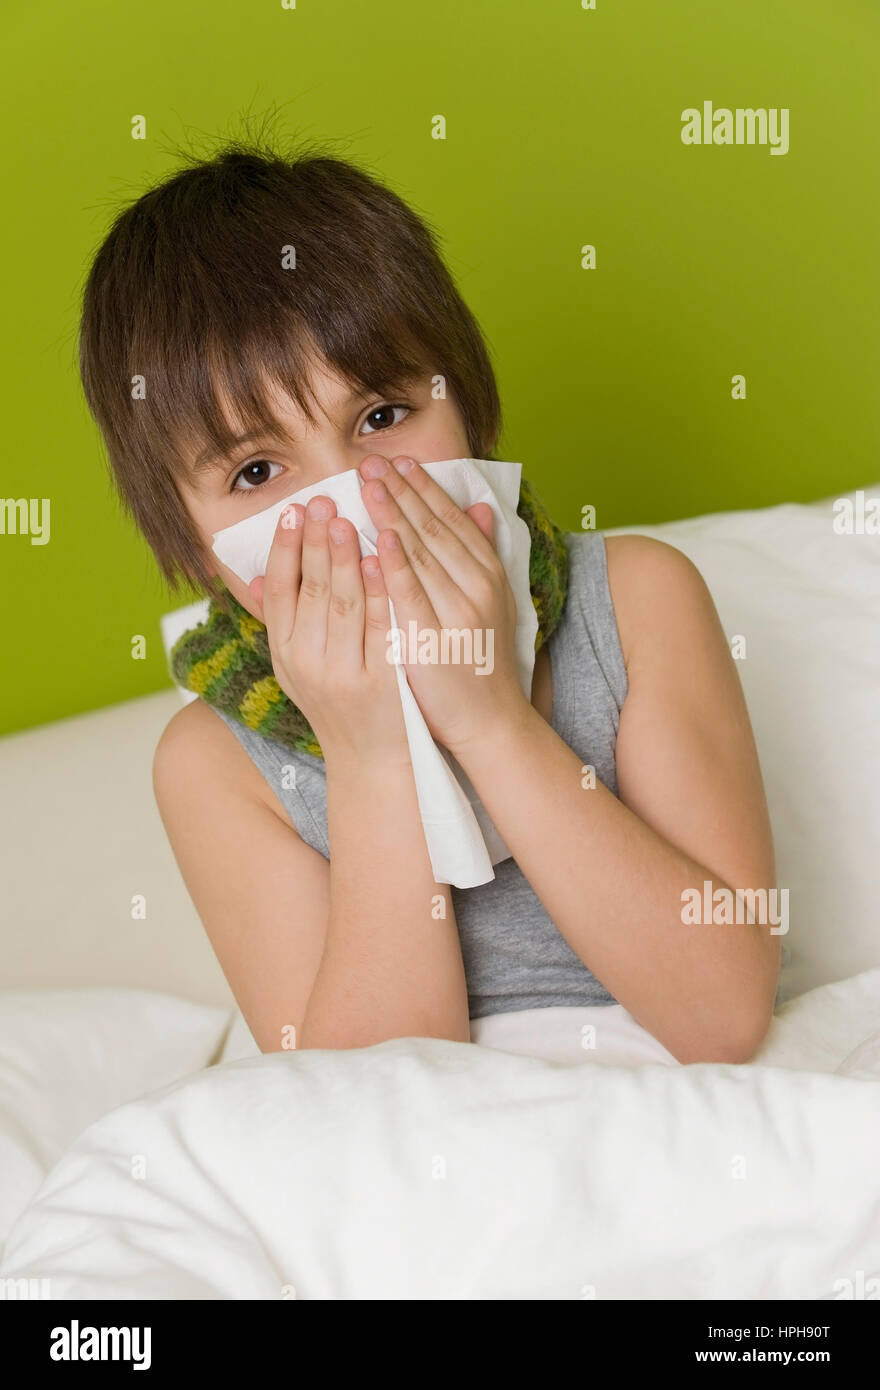 Kranker Junge Schneuzt Sich Im Bett - kranken Jungen im Bett bläst seine Nase, Modell veröffentlicht Stockfoto